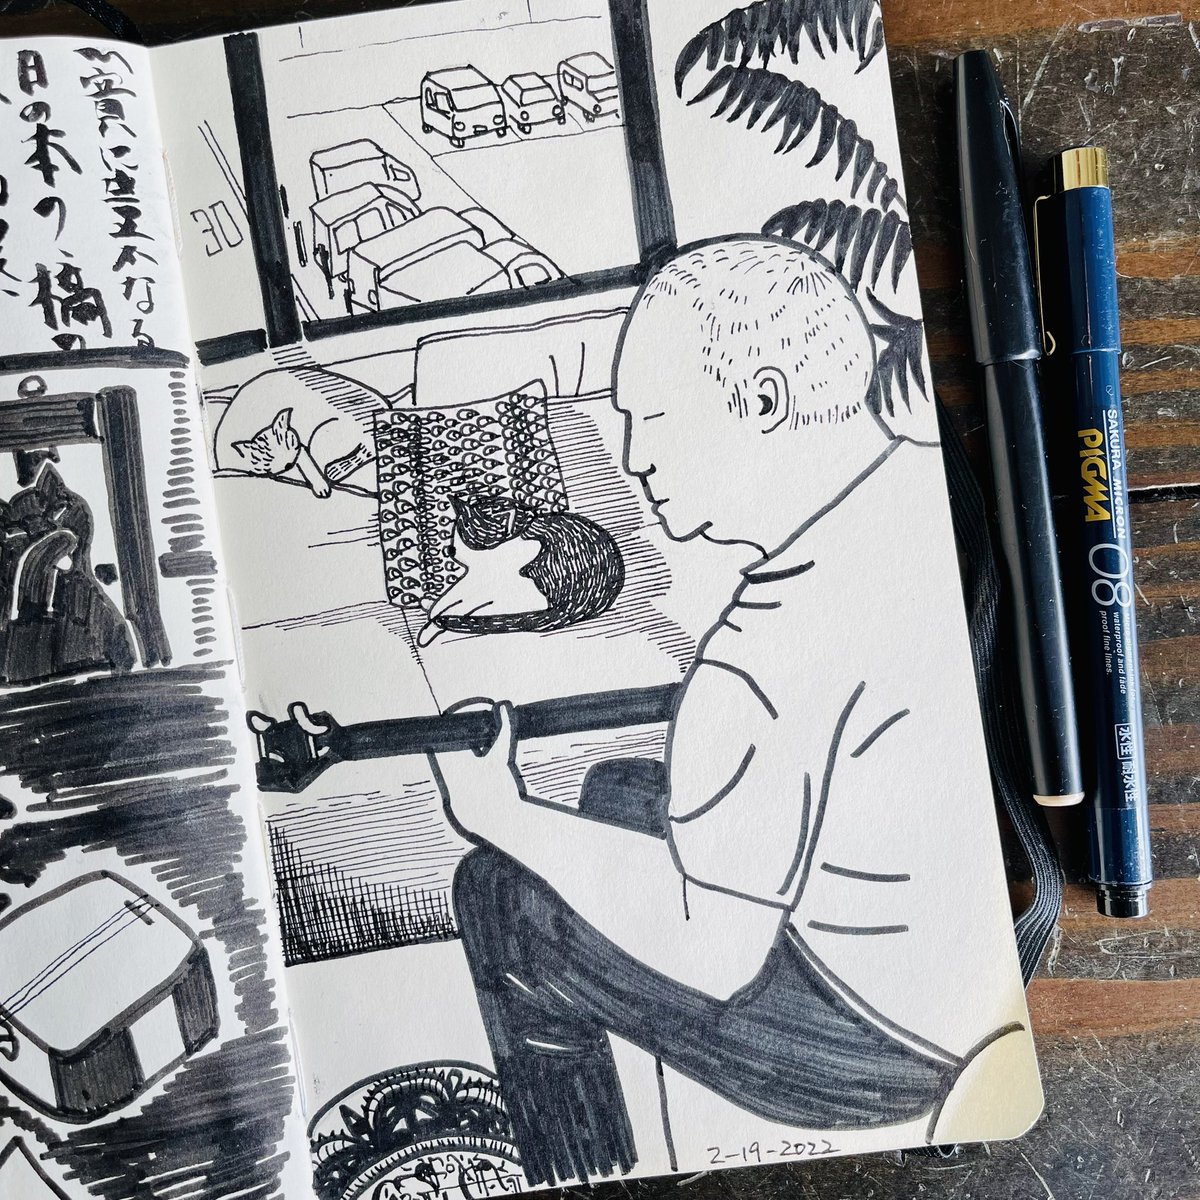 細いペンと太いペンで描きました。

#pentelsignpen #sakuramicron #lifedrawing #roomdrawing #sketchbook #drawaday #illusration #observationaldrawing